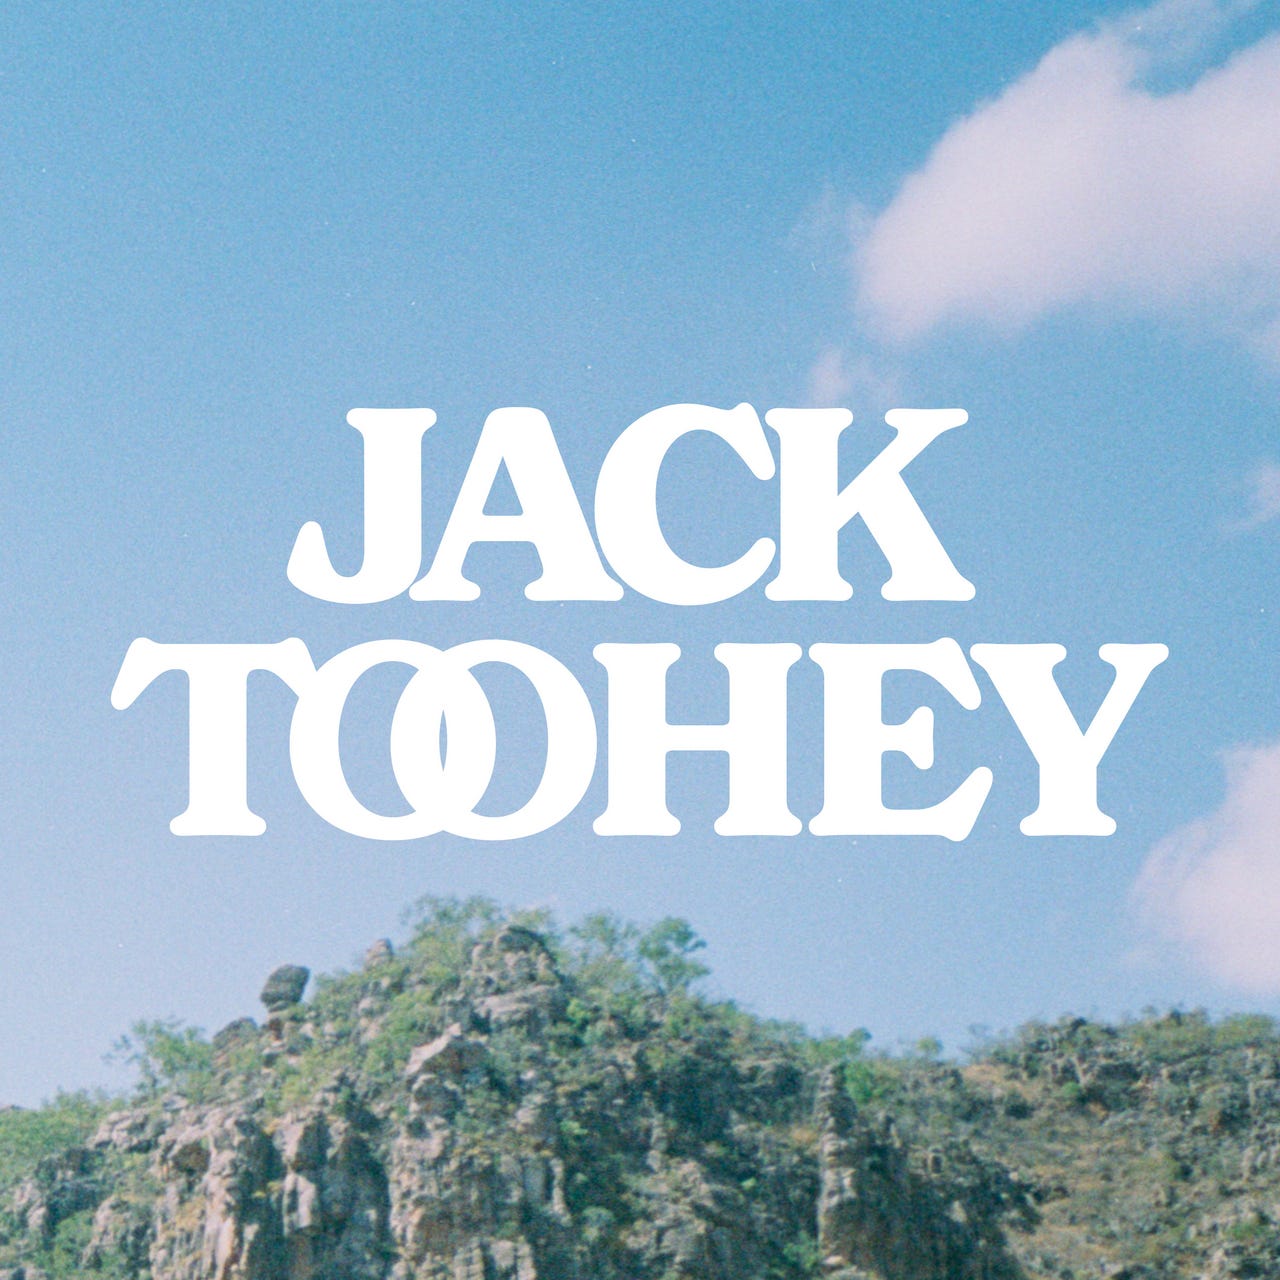 Jack Toohey